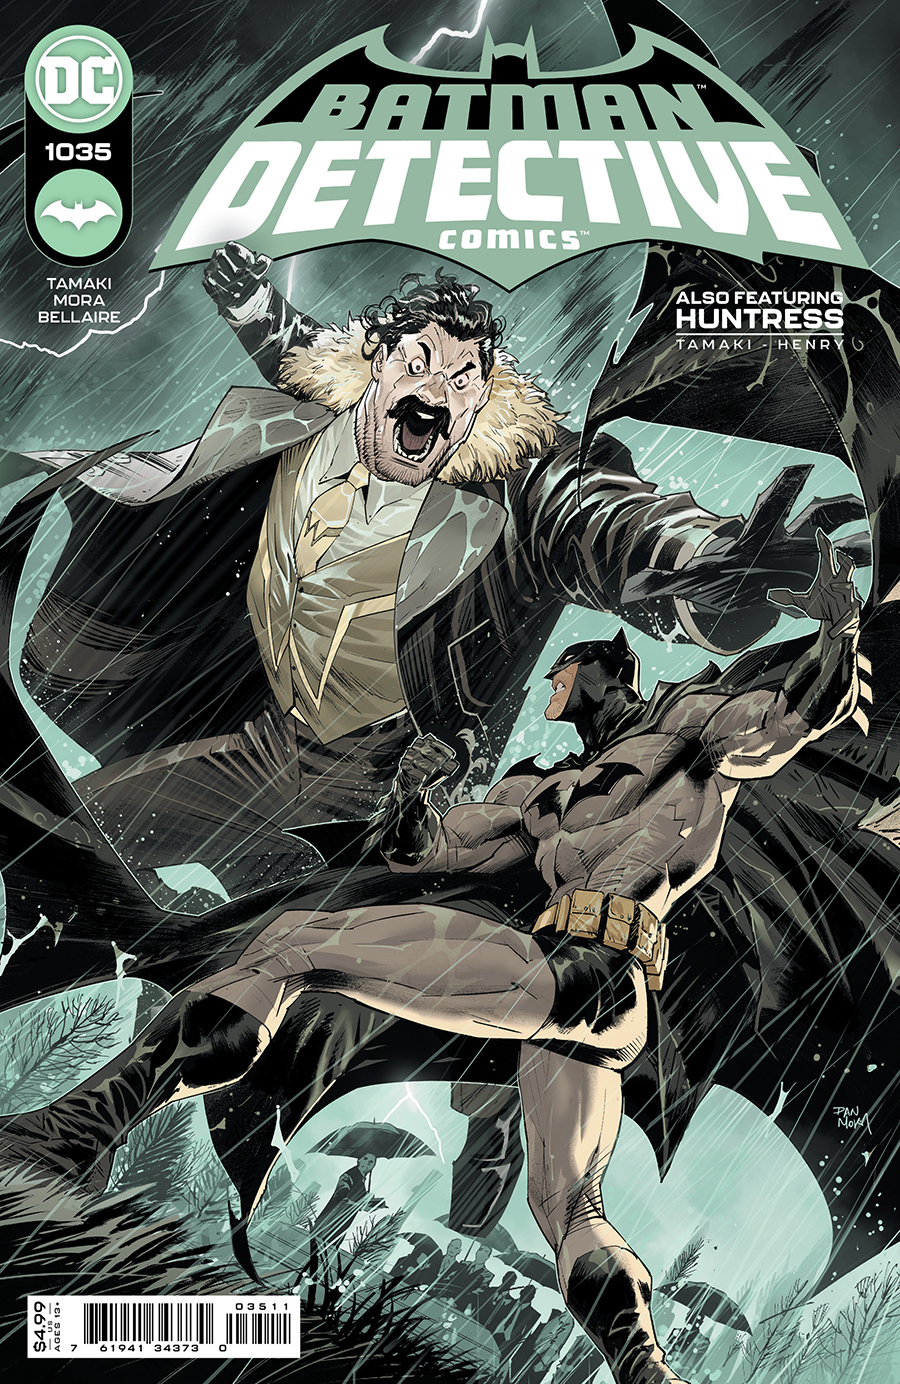 Detective Comics Vol 2 #1035 Cover A